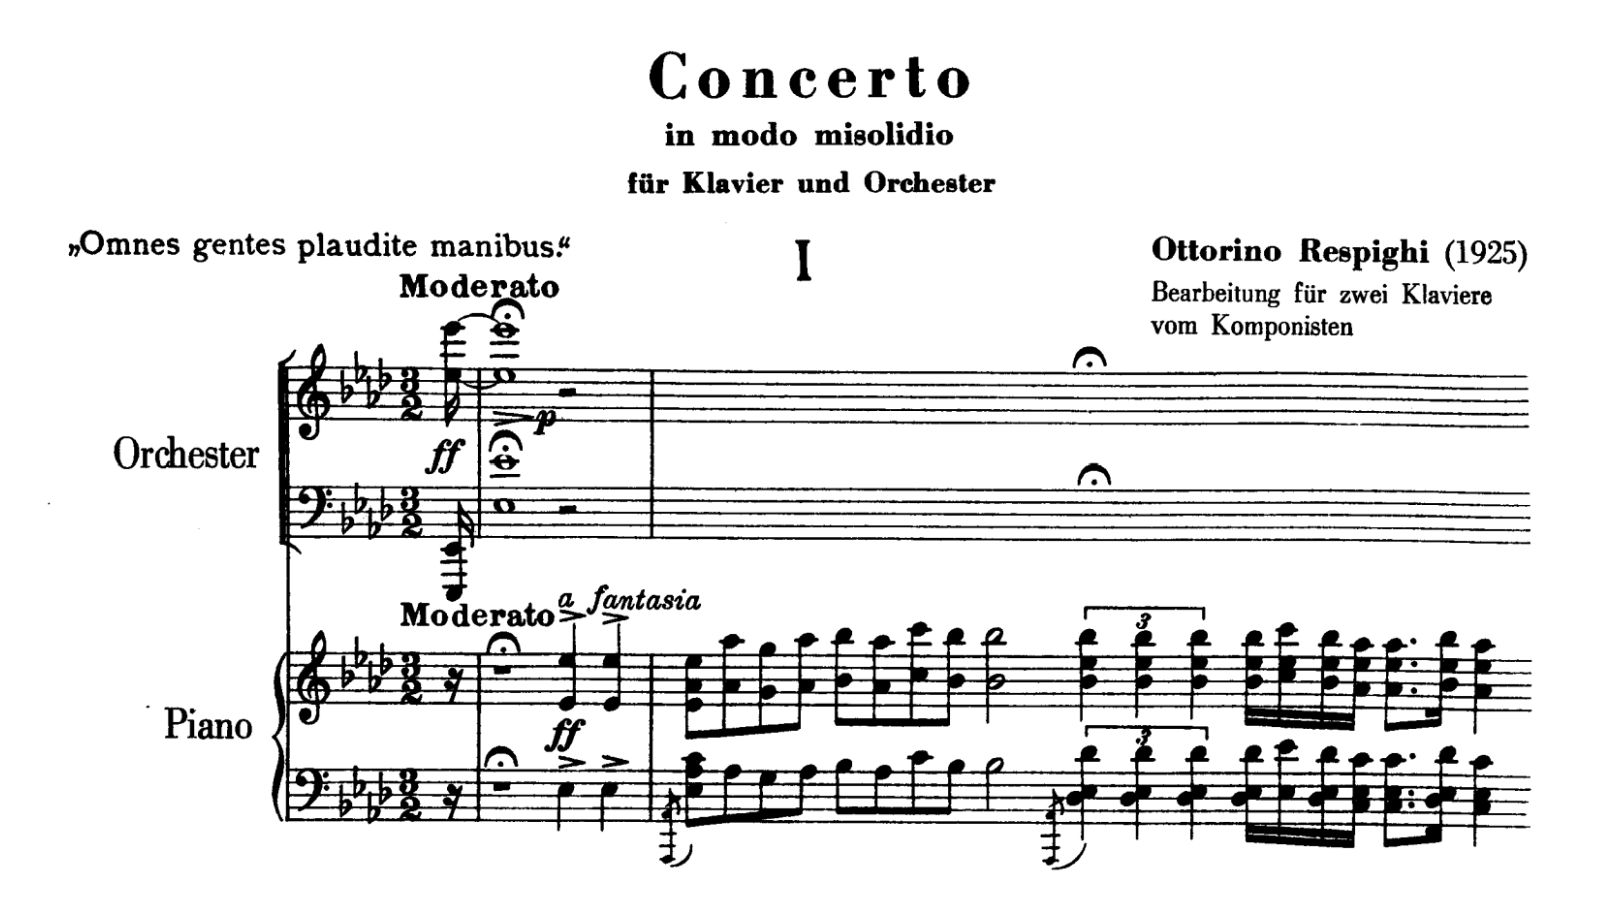 Respighi, Concerto in Modo Misolidio, opening